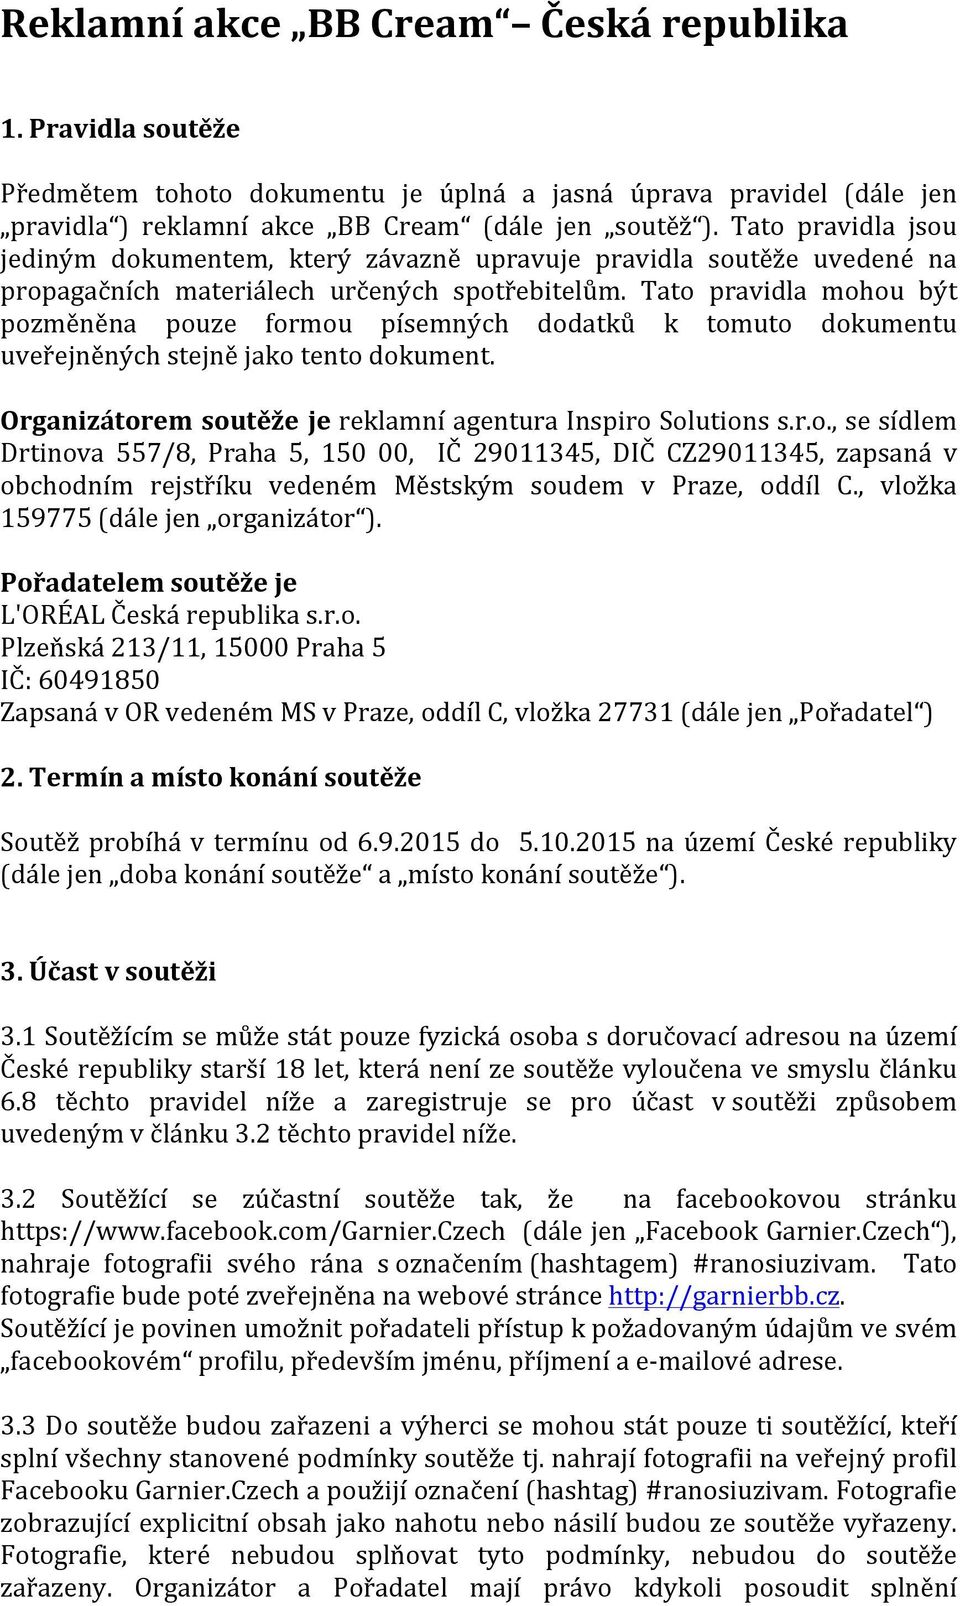 Tato pravidla mohou být pozměněna pouze formou písemných dodatků k tomuto dokumentu uveřejněných stejně jako tento dokument. Organizátorem soutěže je reklamní agentura Inspiro Solutions s.r.o., se sídlem Drtinova 557/8, Praha 5, 150 00, IČ 29011345, DIČ CZ29011345, zapsaná v obchodním rejstříku vedeném Městským soudem v Praze, oddíl C.